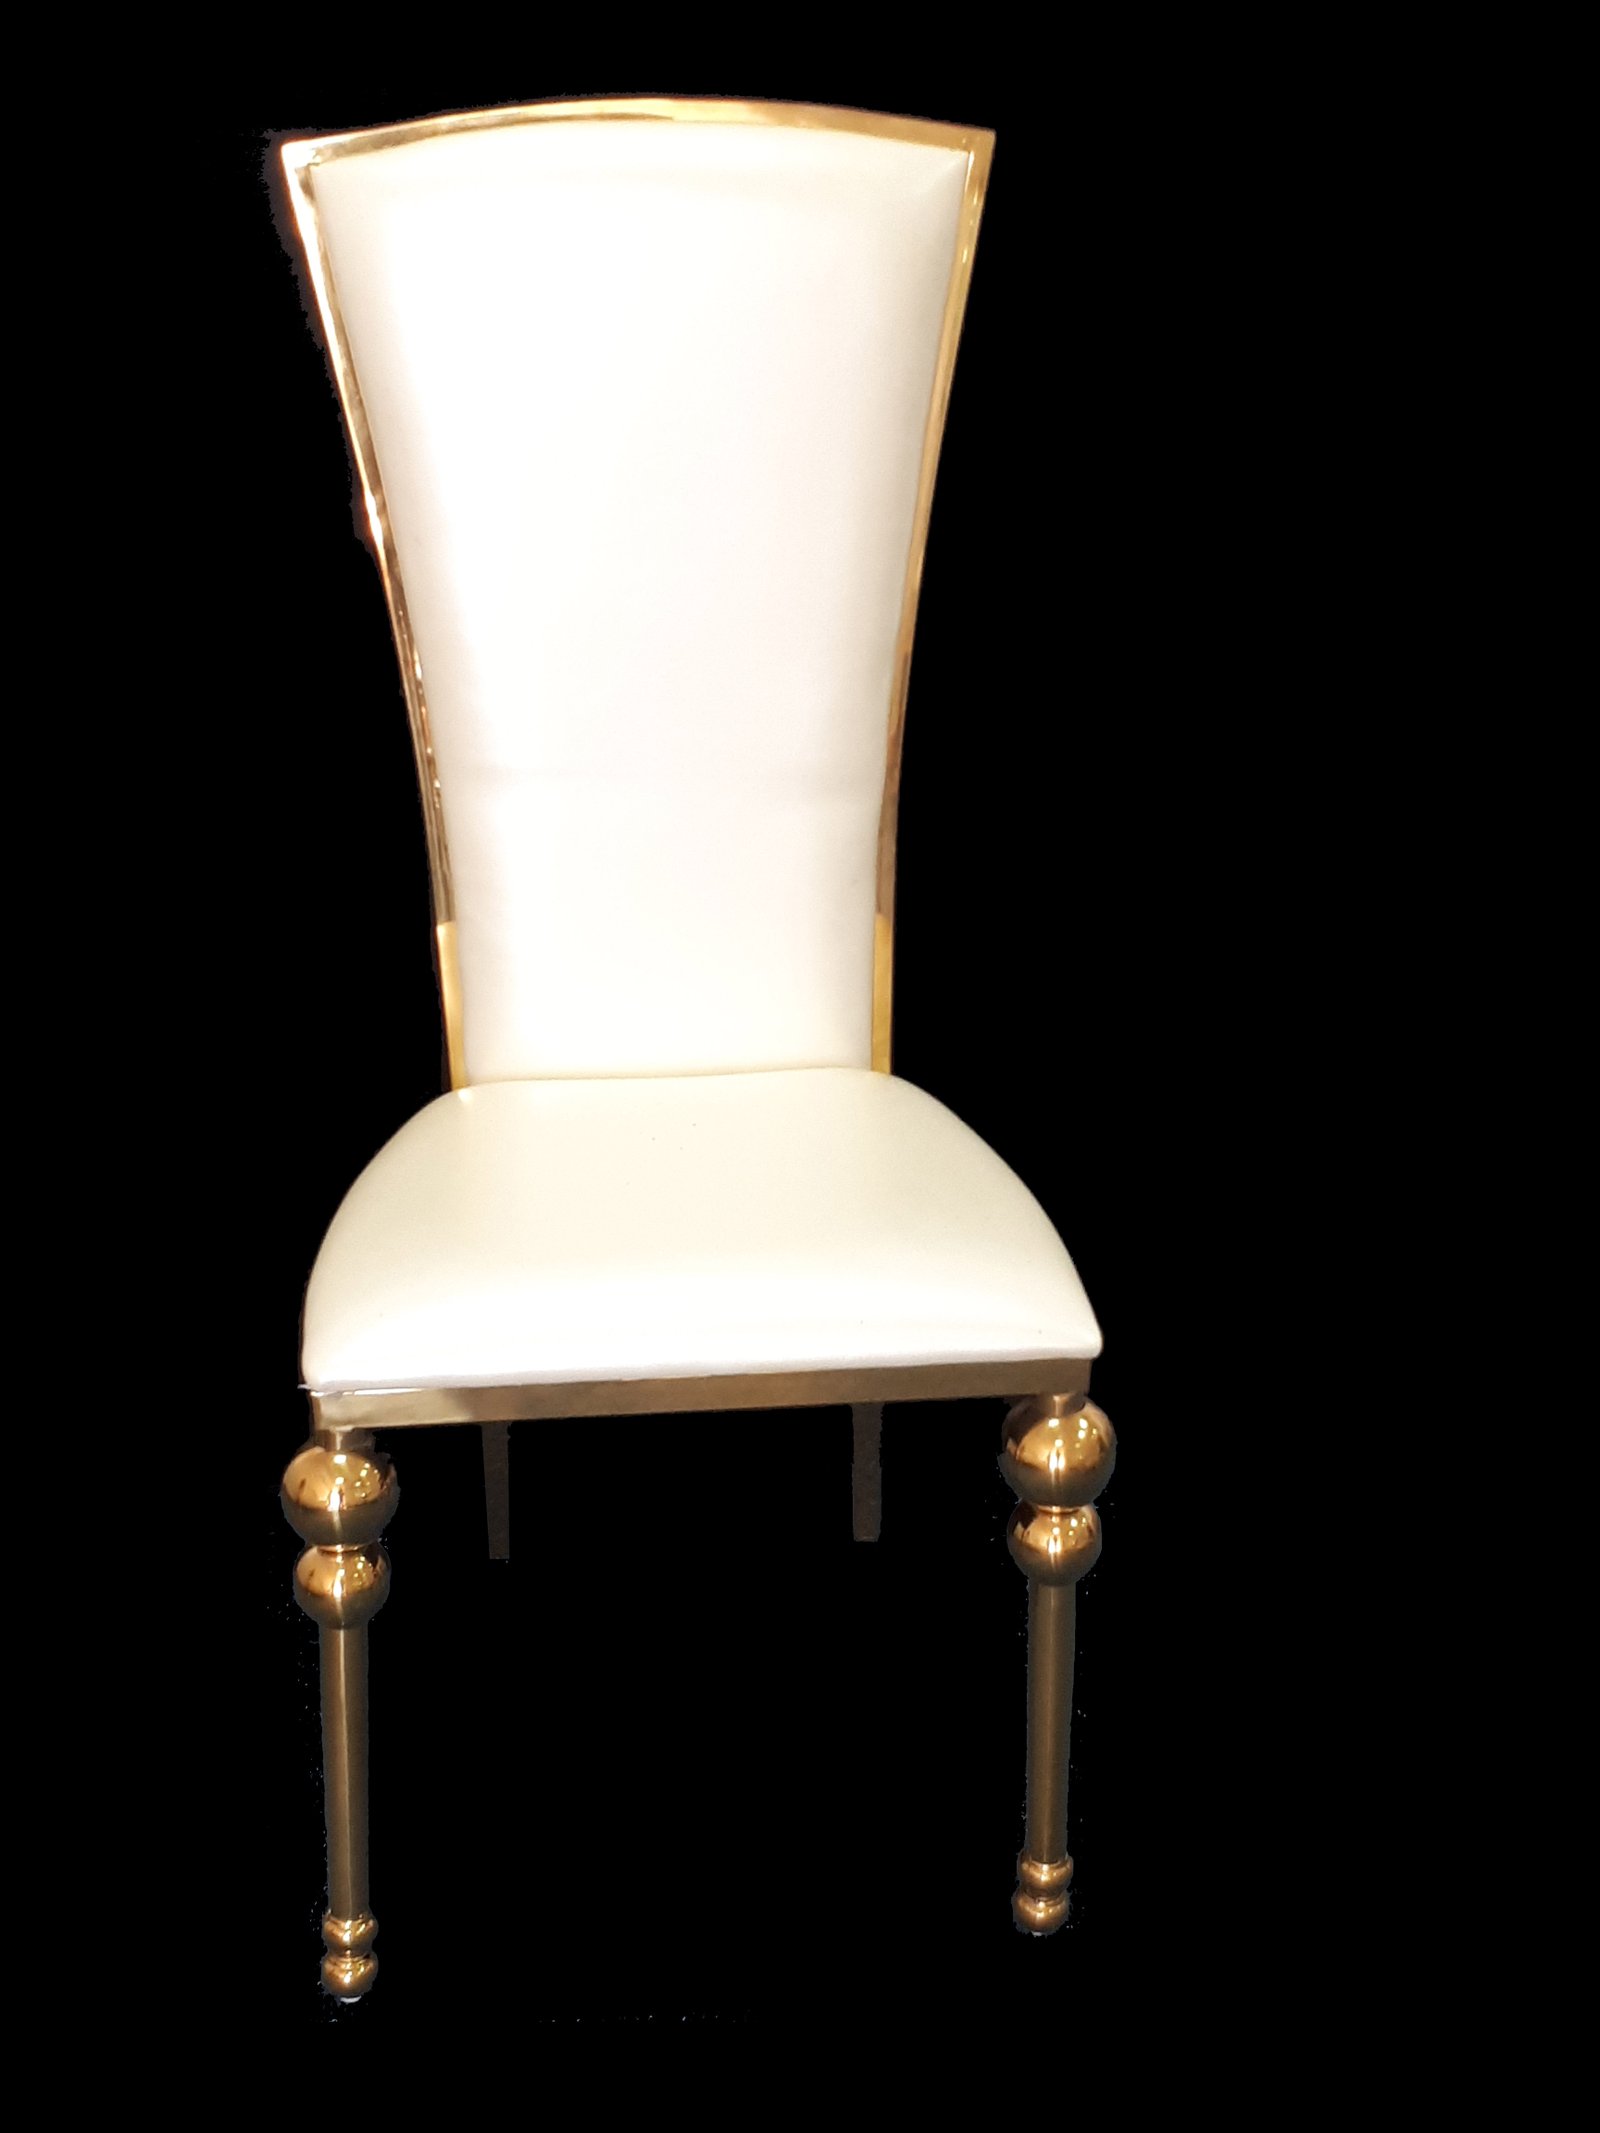 X 03 Special Vip Gold White Dior Chair Dubai Wedding Chair Rental